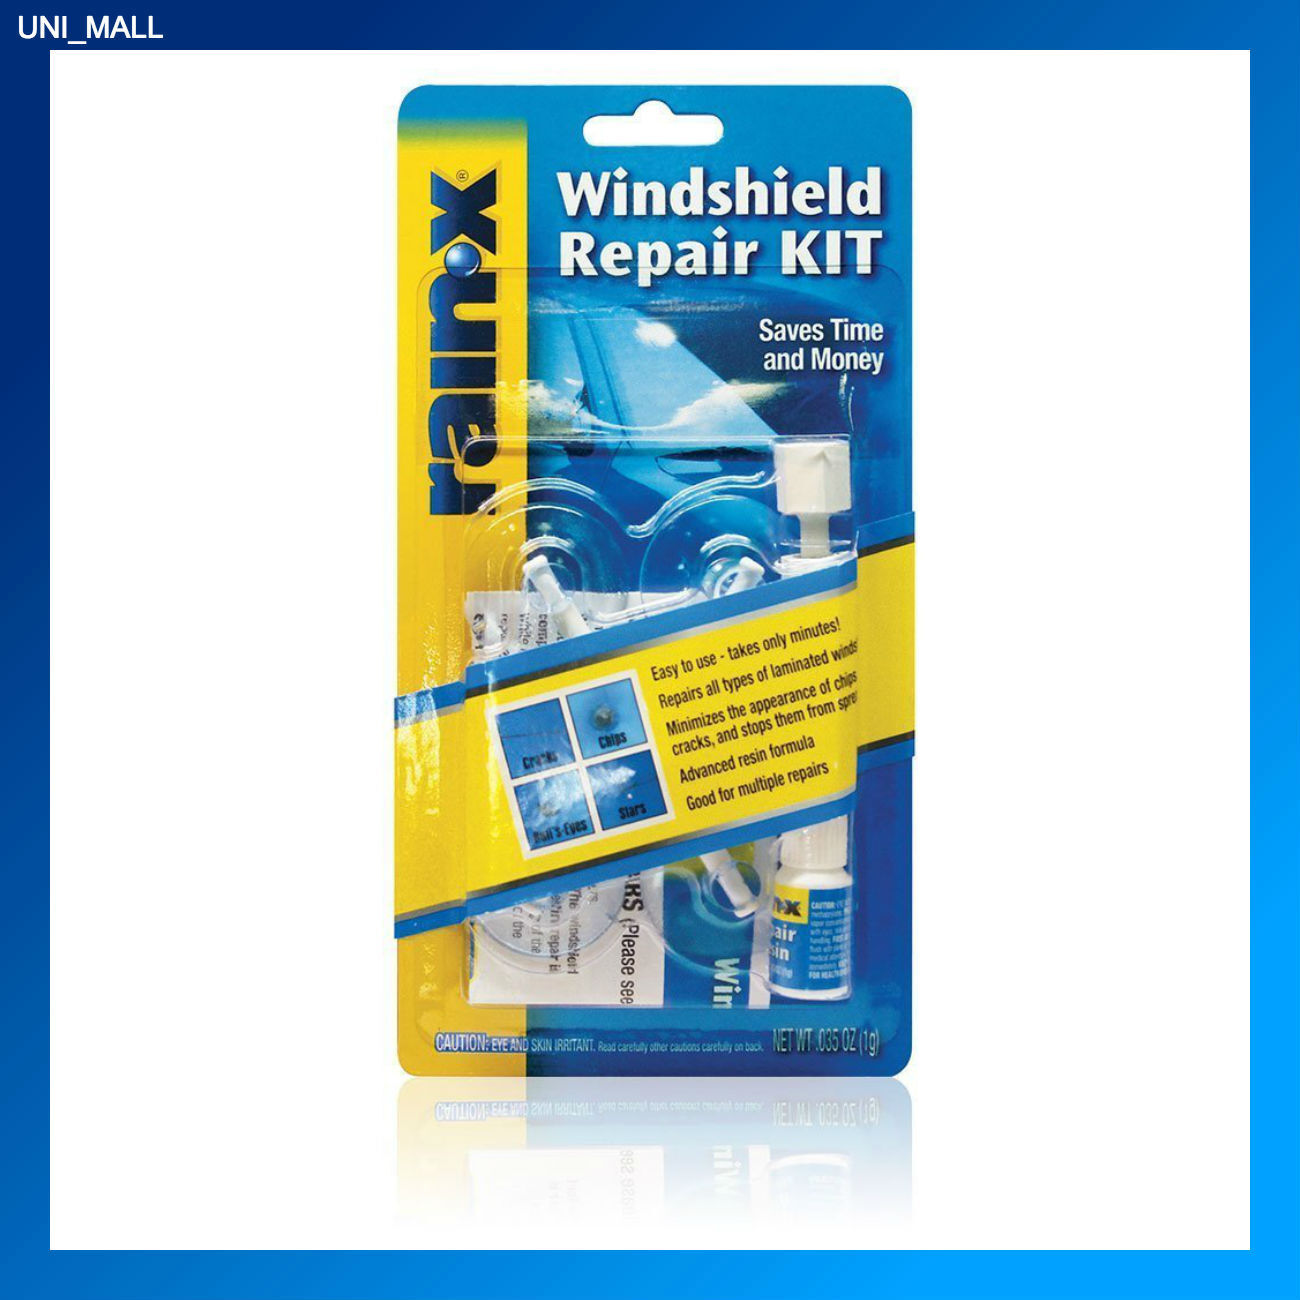 Rain‑X 600001 Windshield Repair Kit, for Cracks, Stars, Chips & Bulll's-Eyes